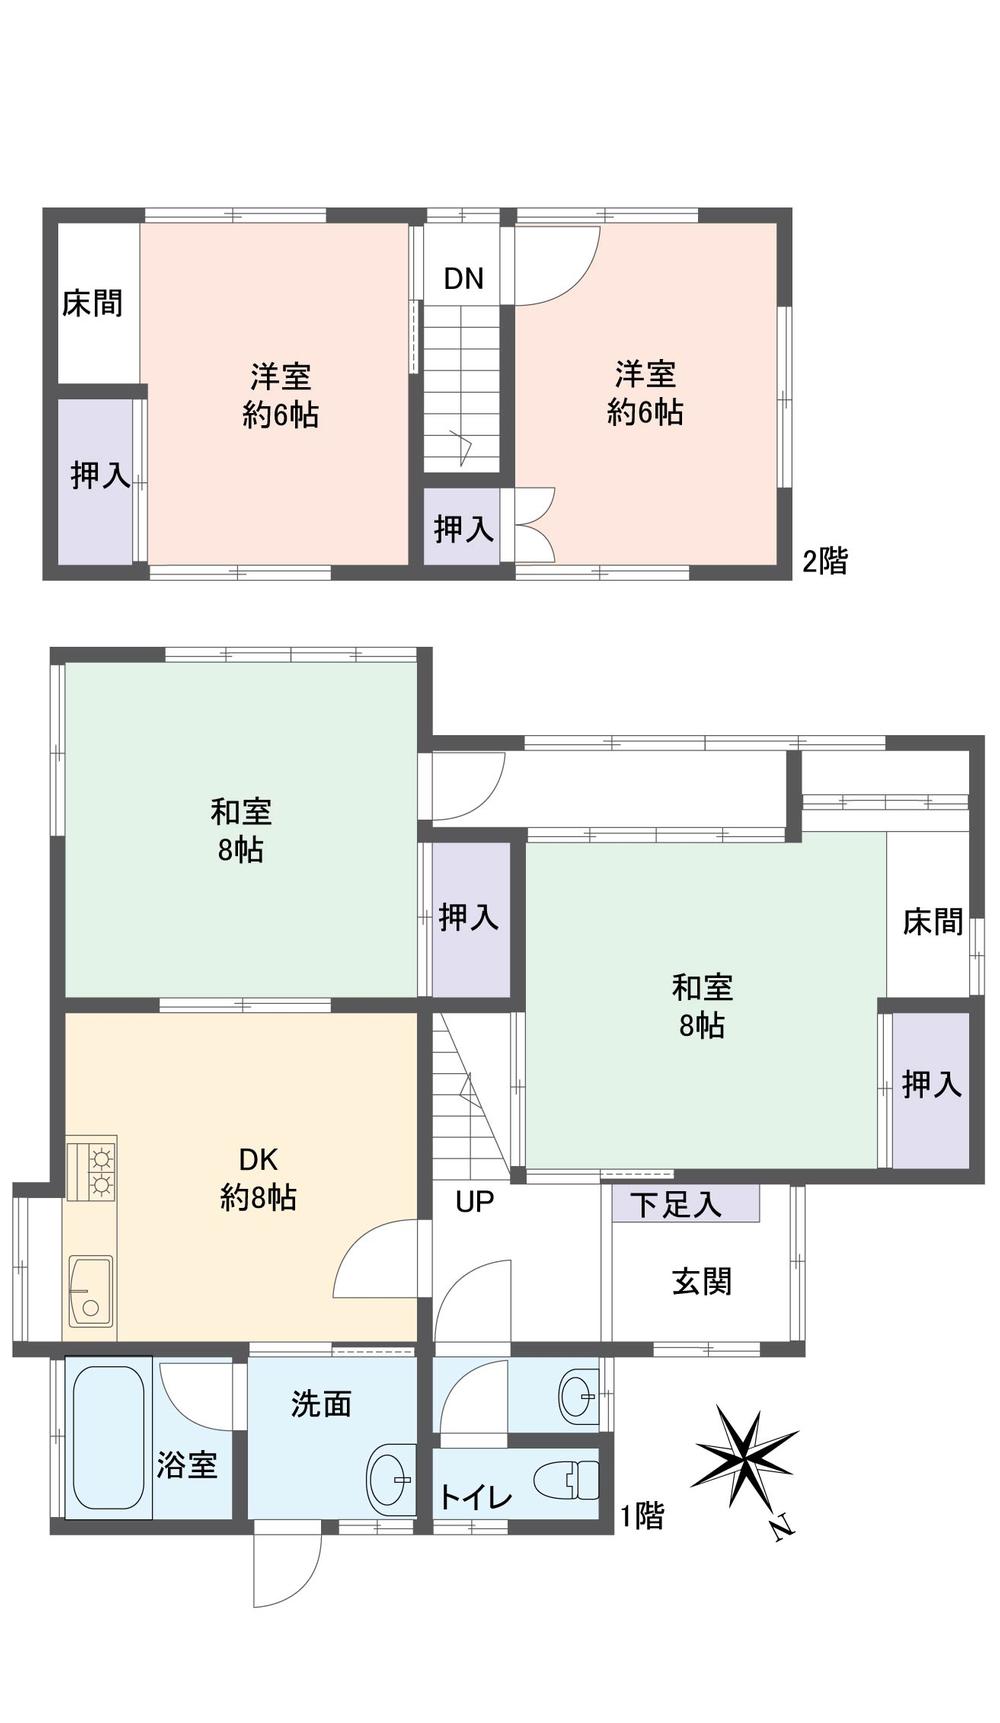 Floor plan. 15.5 million yen, 4LDK, Land area 205.13 sq m , Building area 90 sq m